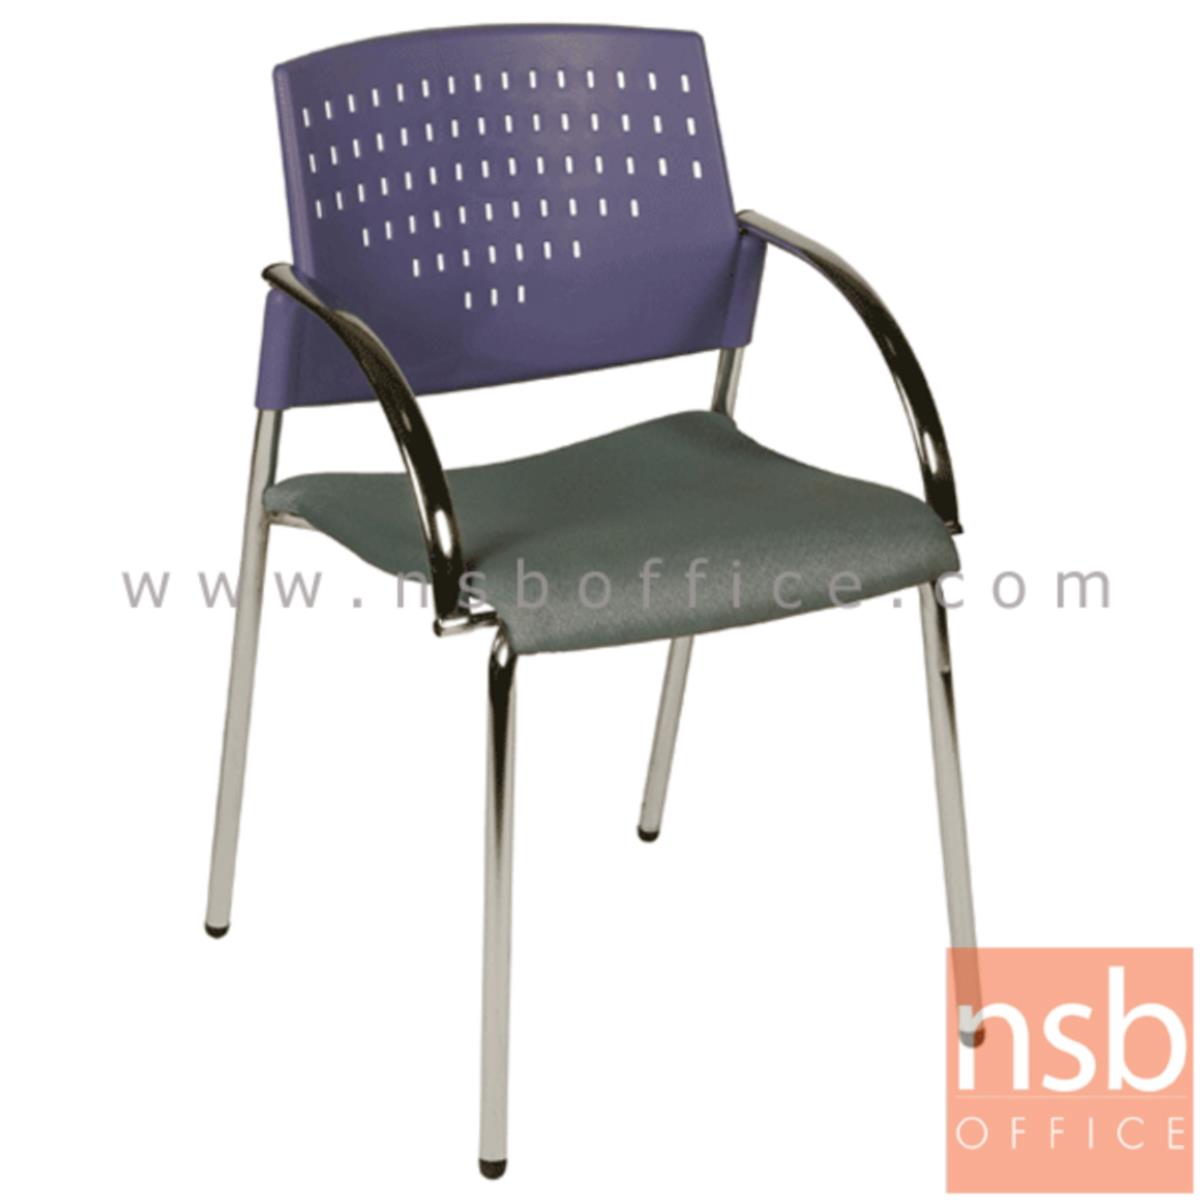 เก้าอี้อเนกประสงค์เฟรมโพลี่  รุ่น A4-51  ขาเหล็กชุบโครเมี่ยม